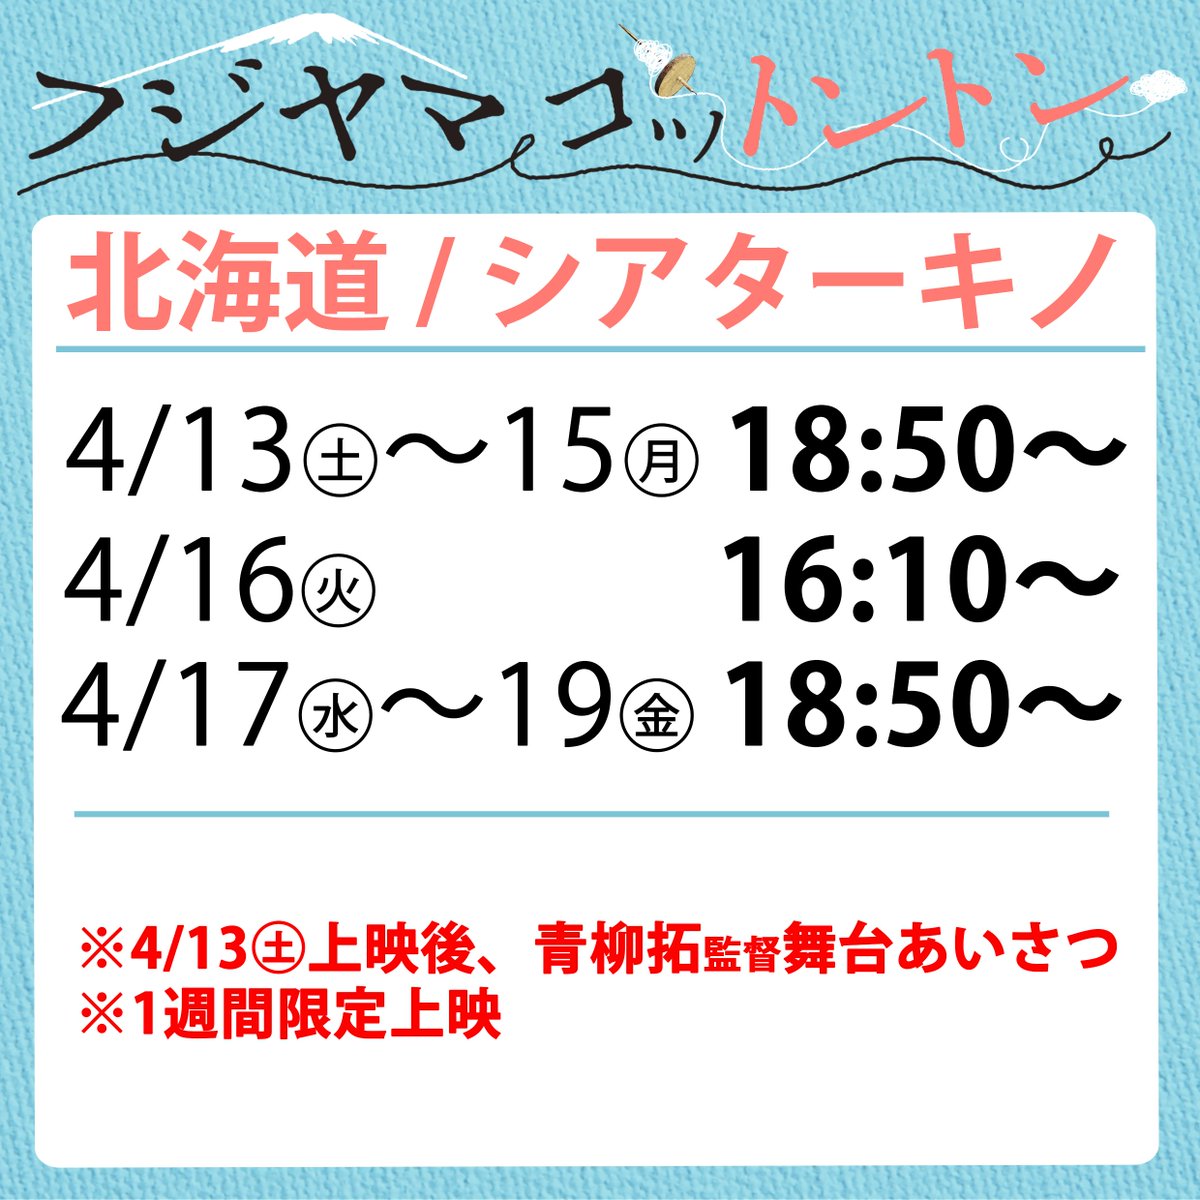 【札幌で上映中🎞】 『フジヤマコットントン』は北海道札幌市にある「シアターキノ」にて一週間上映中！初日には舞台あいさつに行ってきました。雪がとけていてあたたかくて良い気候！狸小路商店街をあるいてお散歩がてら映画を観るのにも本作はおすすめです(*^^*)札幌では～4月19日㊎まで👀